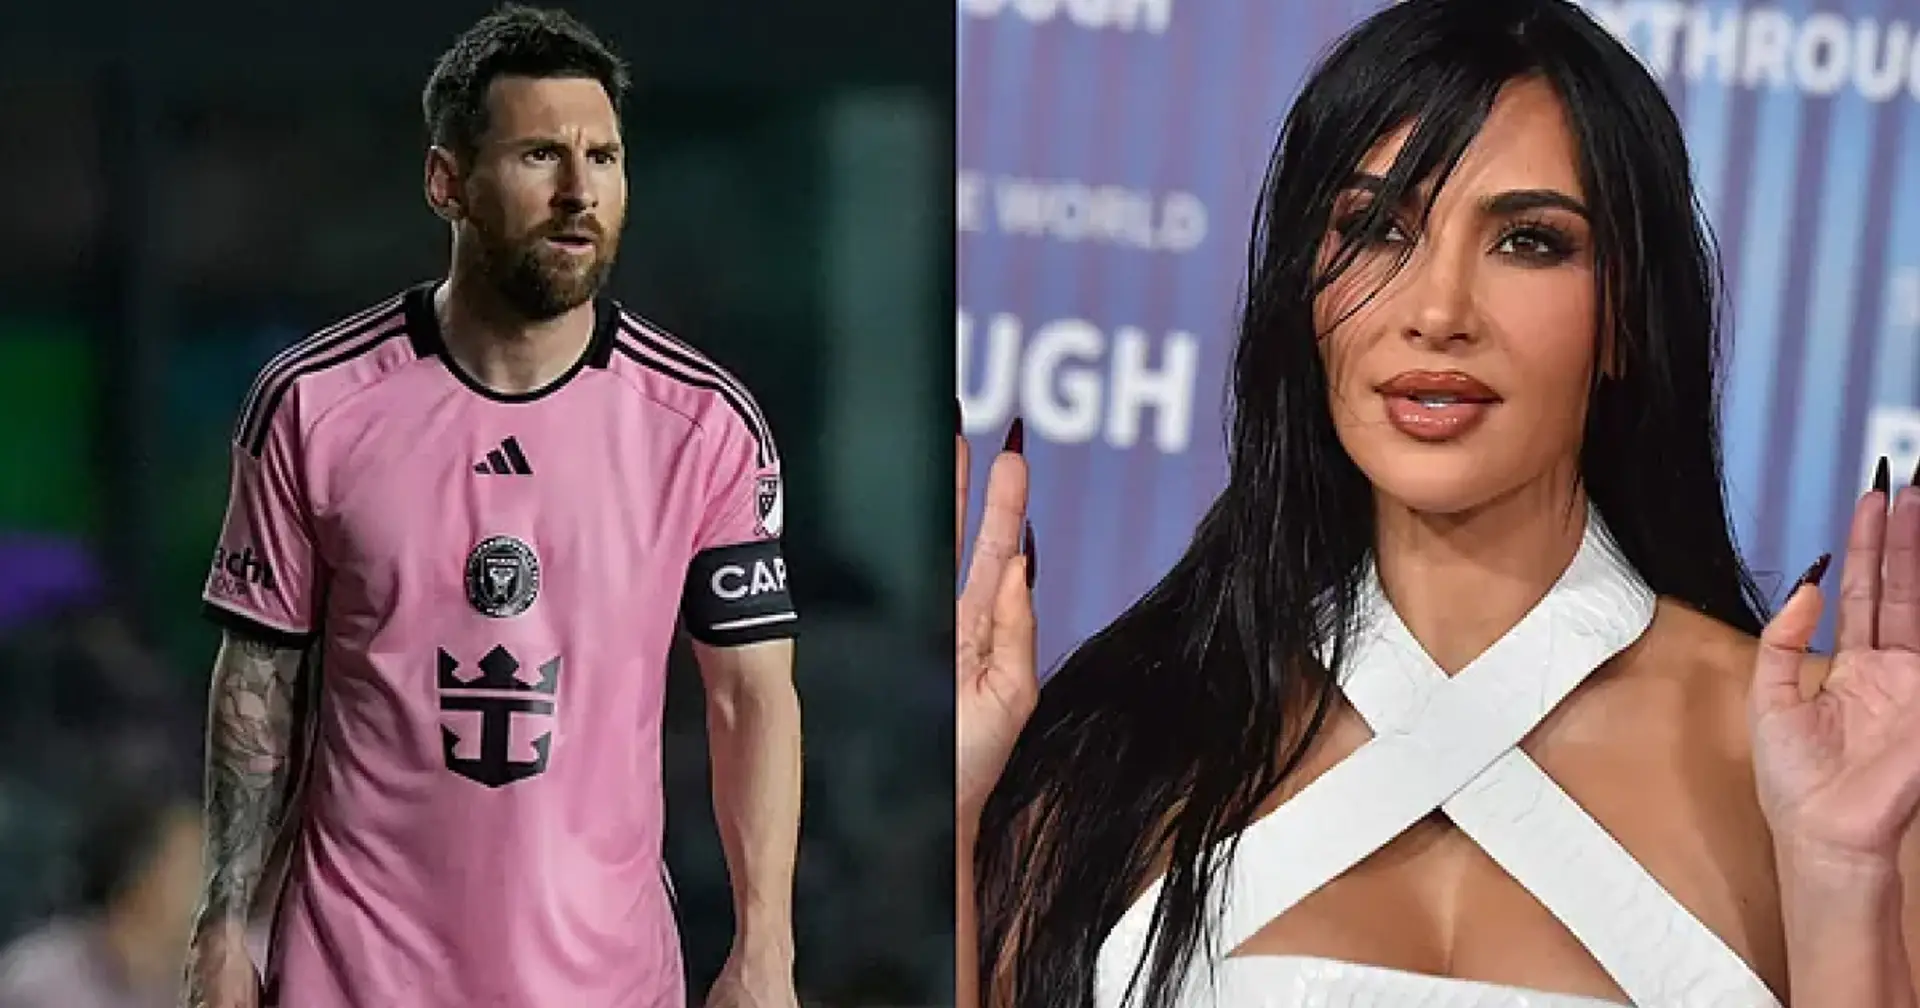 Kim Kardashian zeigt ihre Liebe für Lionel Messi in ihrem neuesten Instagram-Beitrag